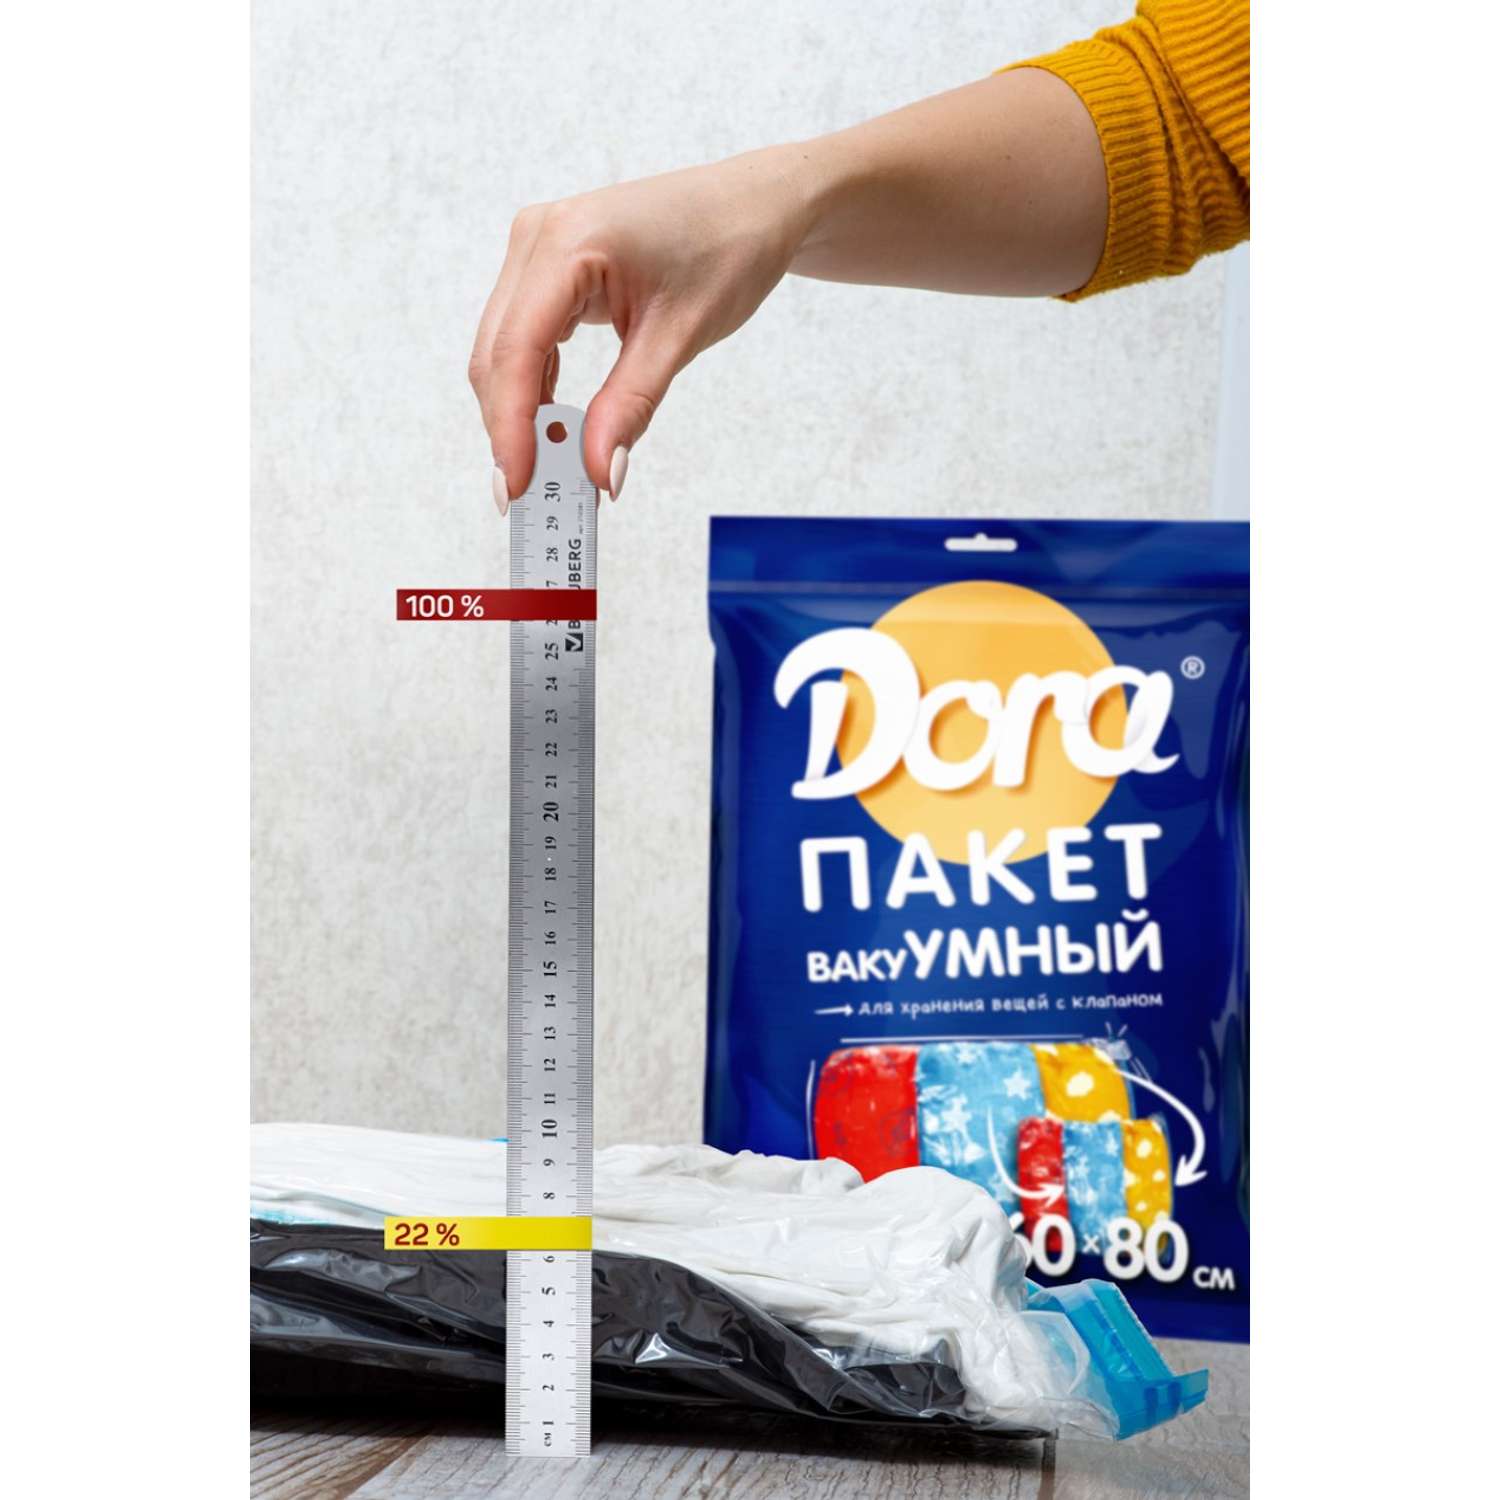 Пакет вакуумный DORA для хранения вещей 60х80см - фото 5